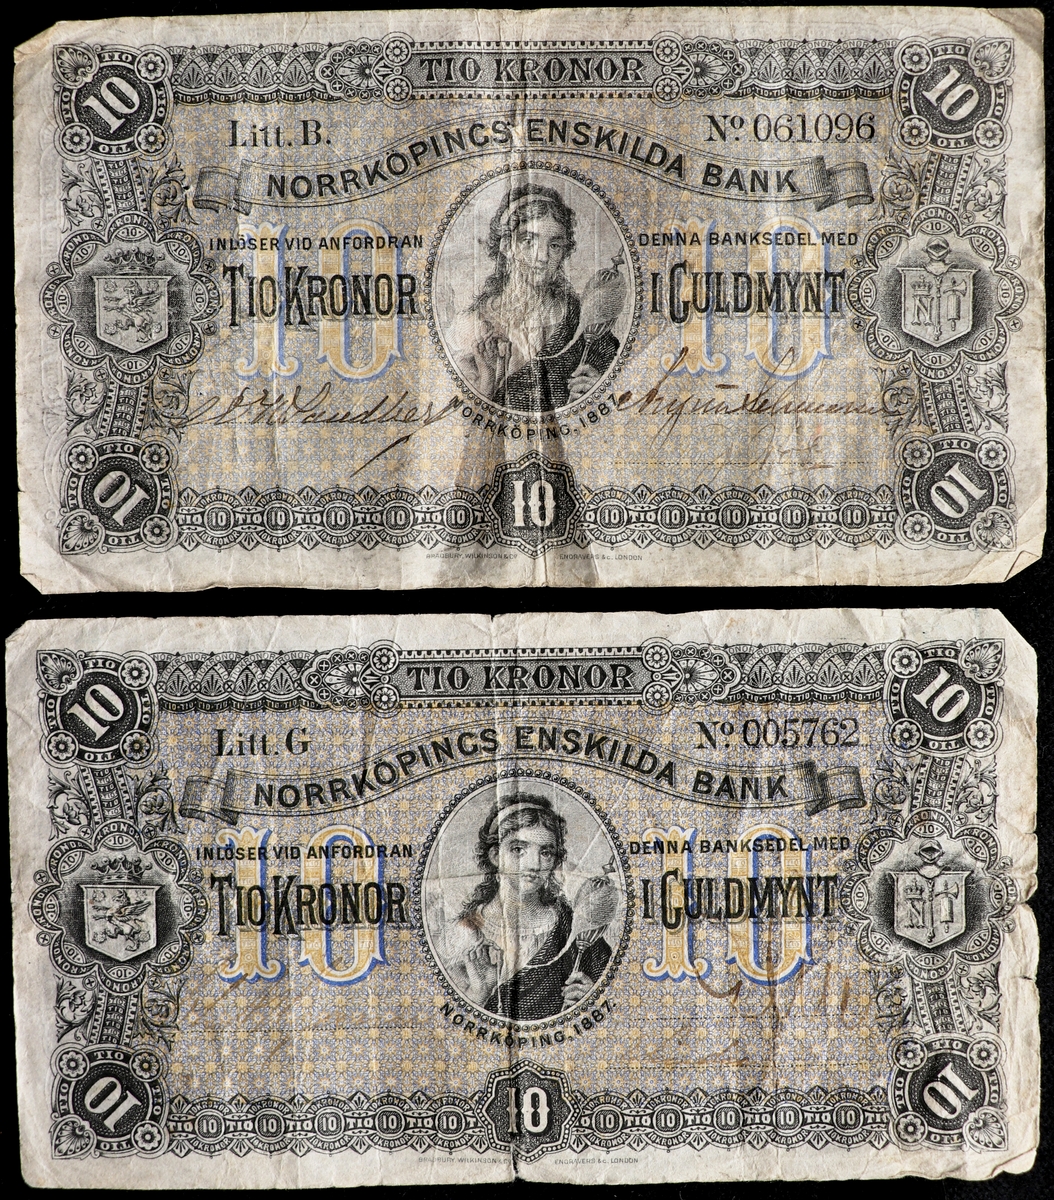 Två blågrån sedlar på tio kronor från Norrköpings Enskilda Bank från 1887. Serienummer 5762 och 61 096 tryckt på höger sida. Tre signaturer på sedeln. I mitten på vänster kant finns Östergötlands landskapsvapen och i mitten på höger kant finns Norrköpings gamla stadsvapen i form av ett N krönt med en krona, en spira och en yxa. I mitten av sedeln en oval med en bild av en kvinna med en slända.
Baksidan är blå på sidorna och orange i mitten. I mitten står det 10 och på båda sidor om dem finns kvinnoansikten i profil. Klisterlapp på baksidan efter att sedeln suttit på en tavla.

Tillstånd vid förvärv: Ena sedelns färger är betydligt mer urblekta. Veck efter viktning.